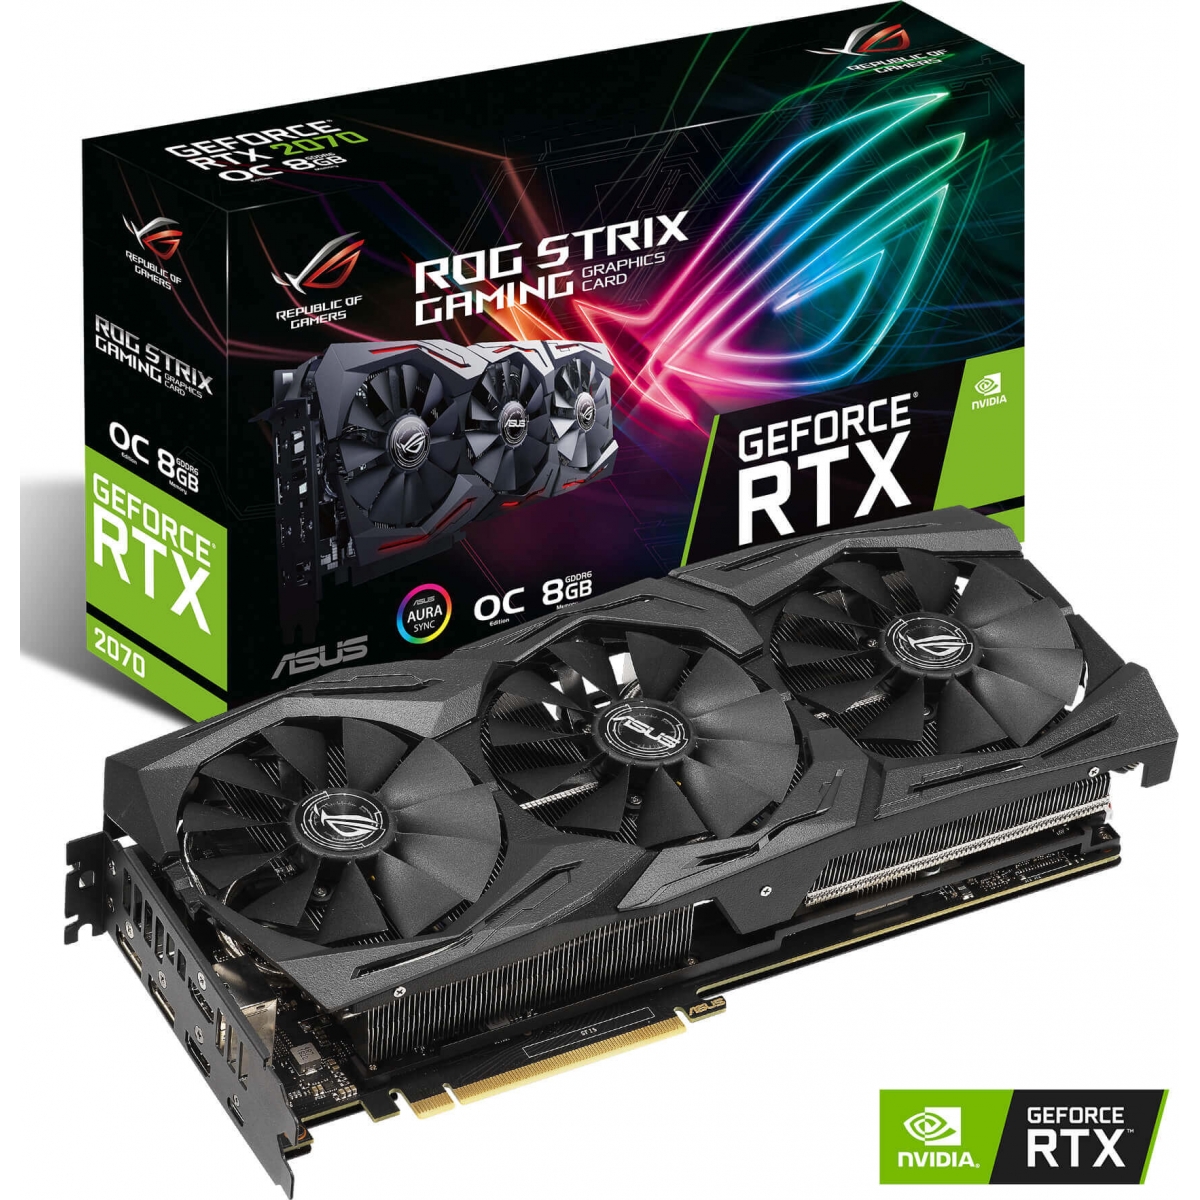 Card ASUS ROG Strix GeForce RTX 2070 OC edition 8GB GDDR6